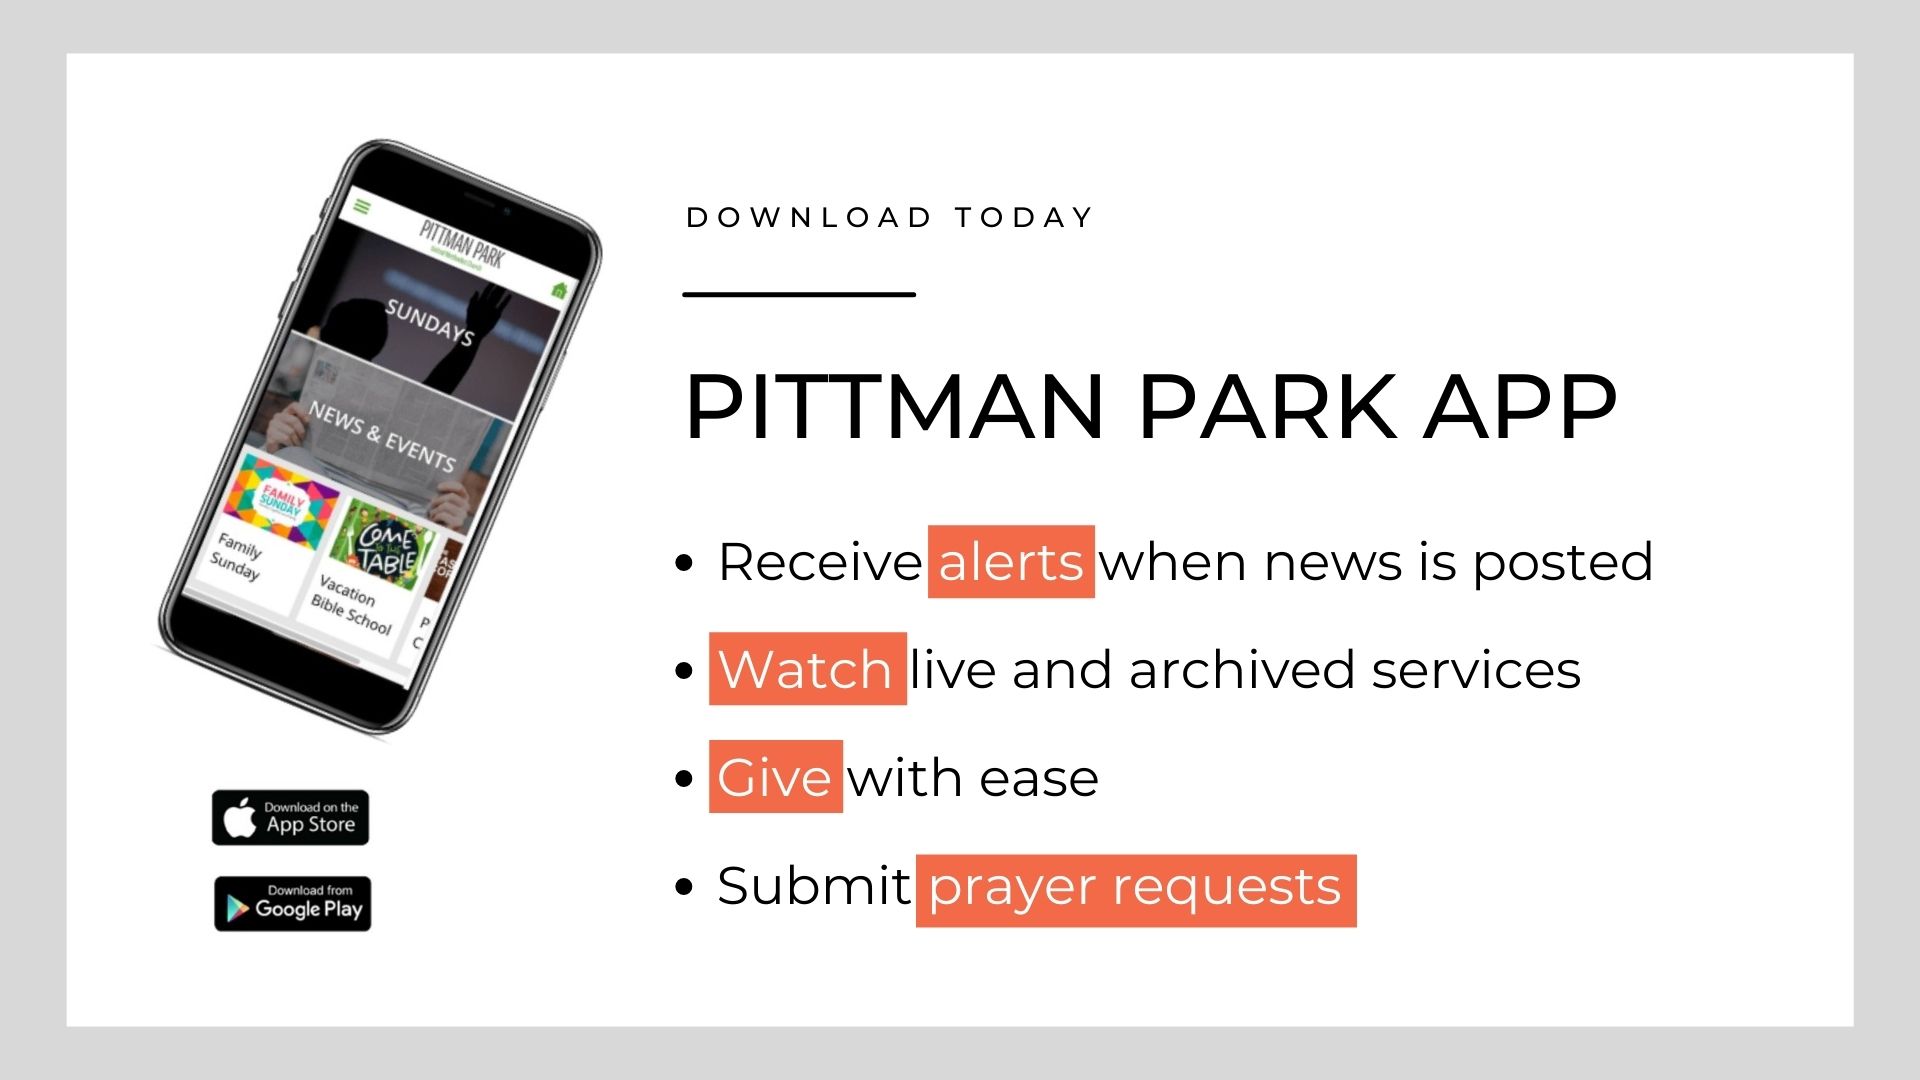 Pittman Park has an app